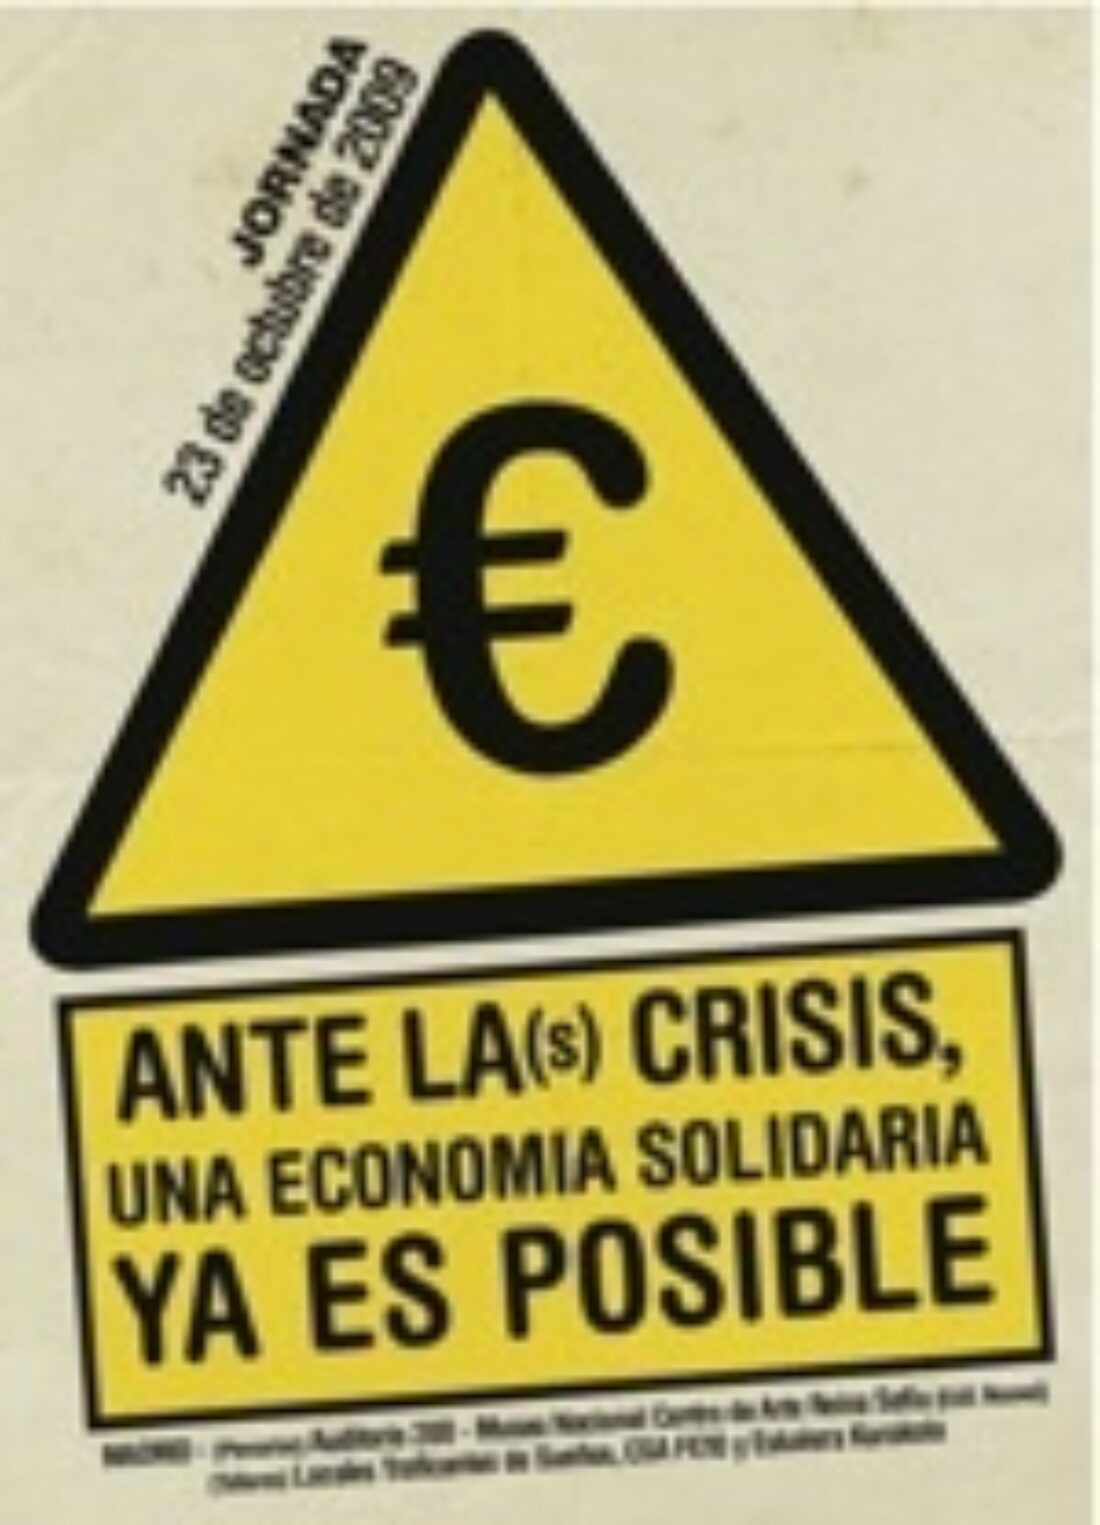 23 octubre Madrid : «Ante la(s) crisis, una economía solidaria ya es posible»